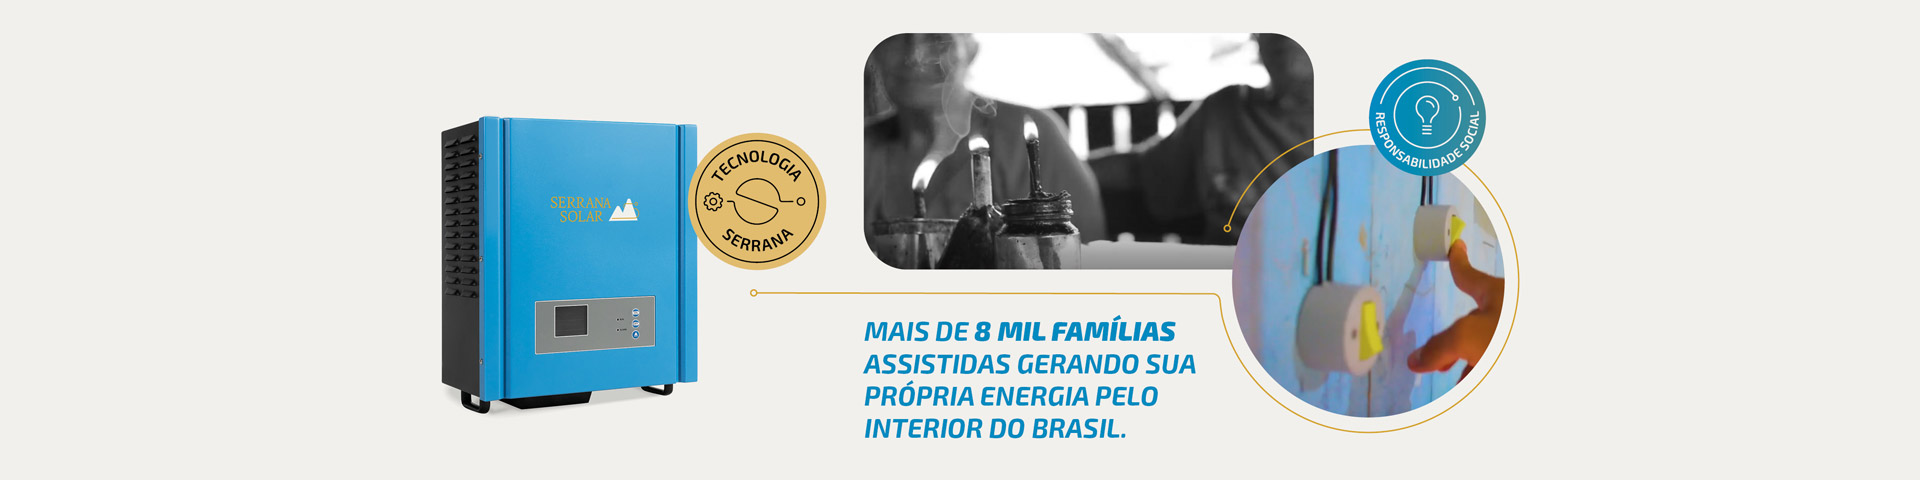 Banner Mais de 8 mil famílias assistidas gerando sua própria energia pelo interior do Brasil